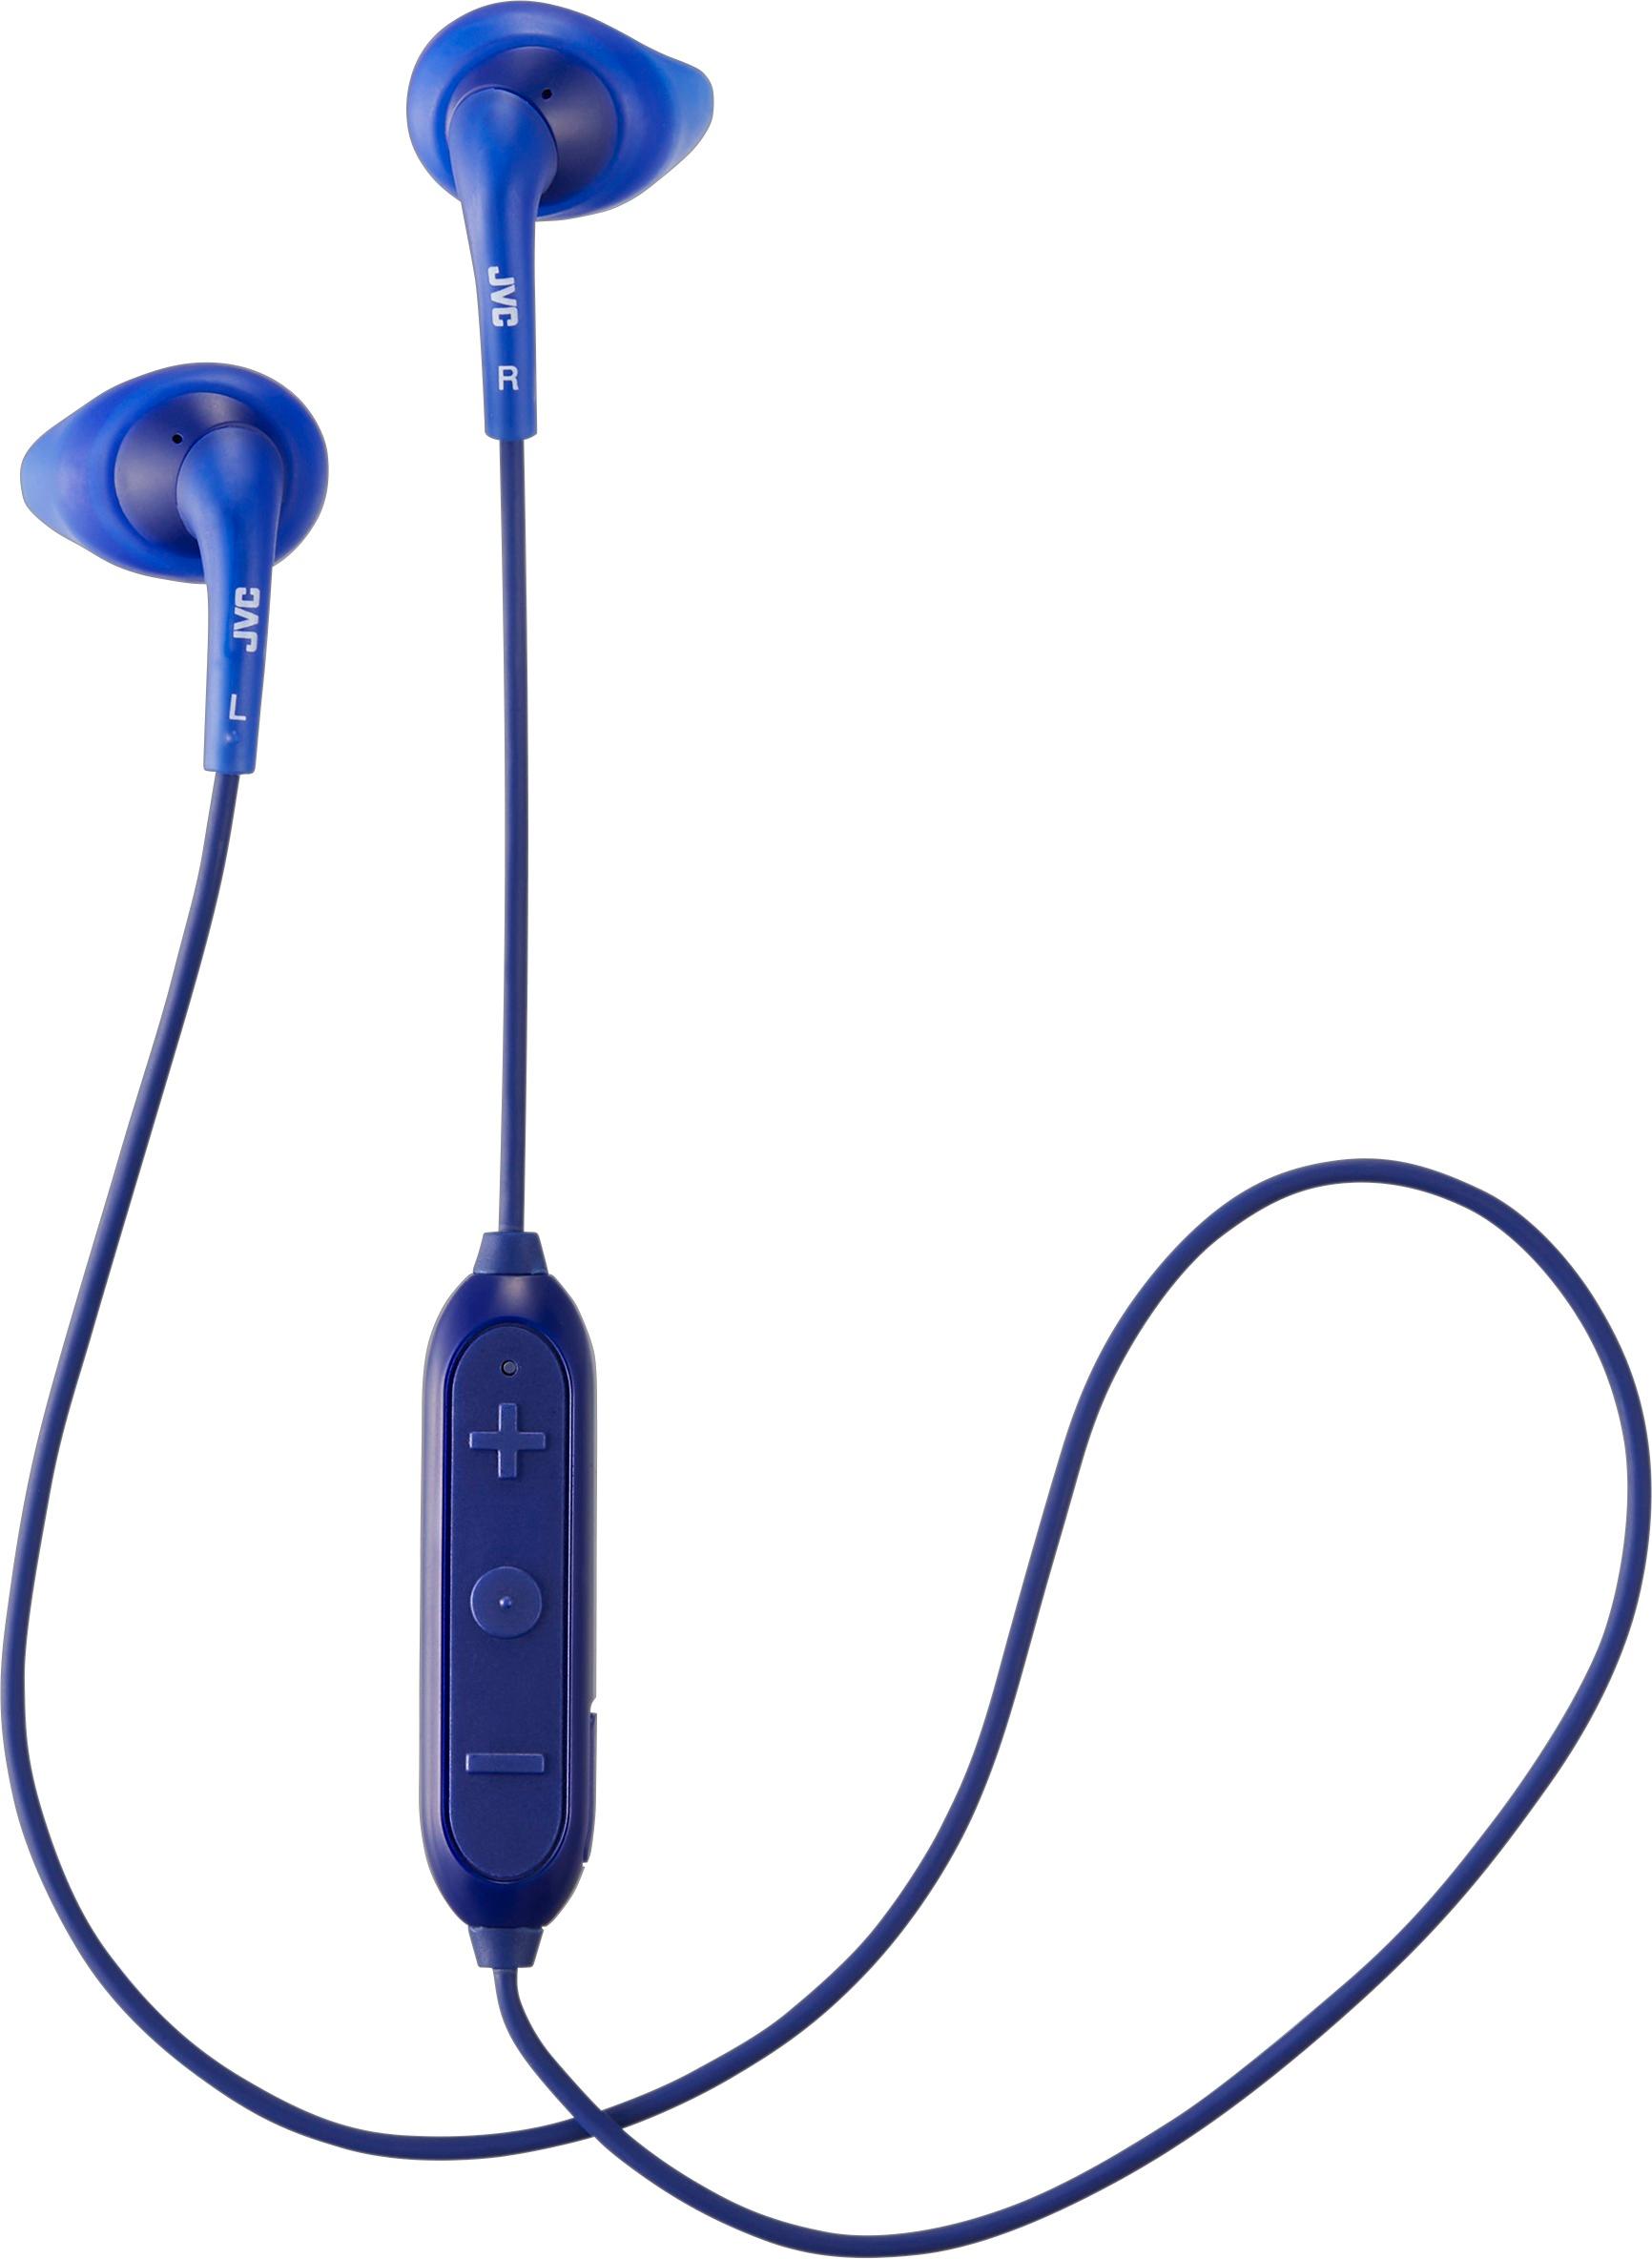 Angle View: JVC - HA EN10BT Gumy Sport Wireless In-Ear Headphones - Blue